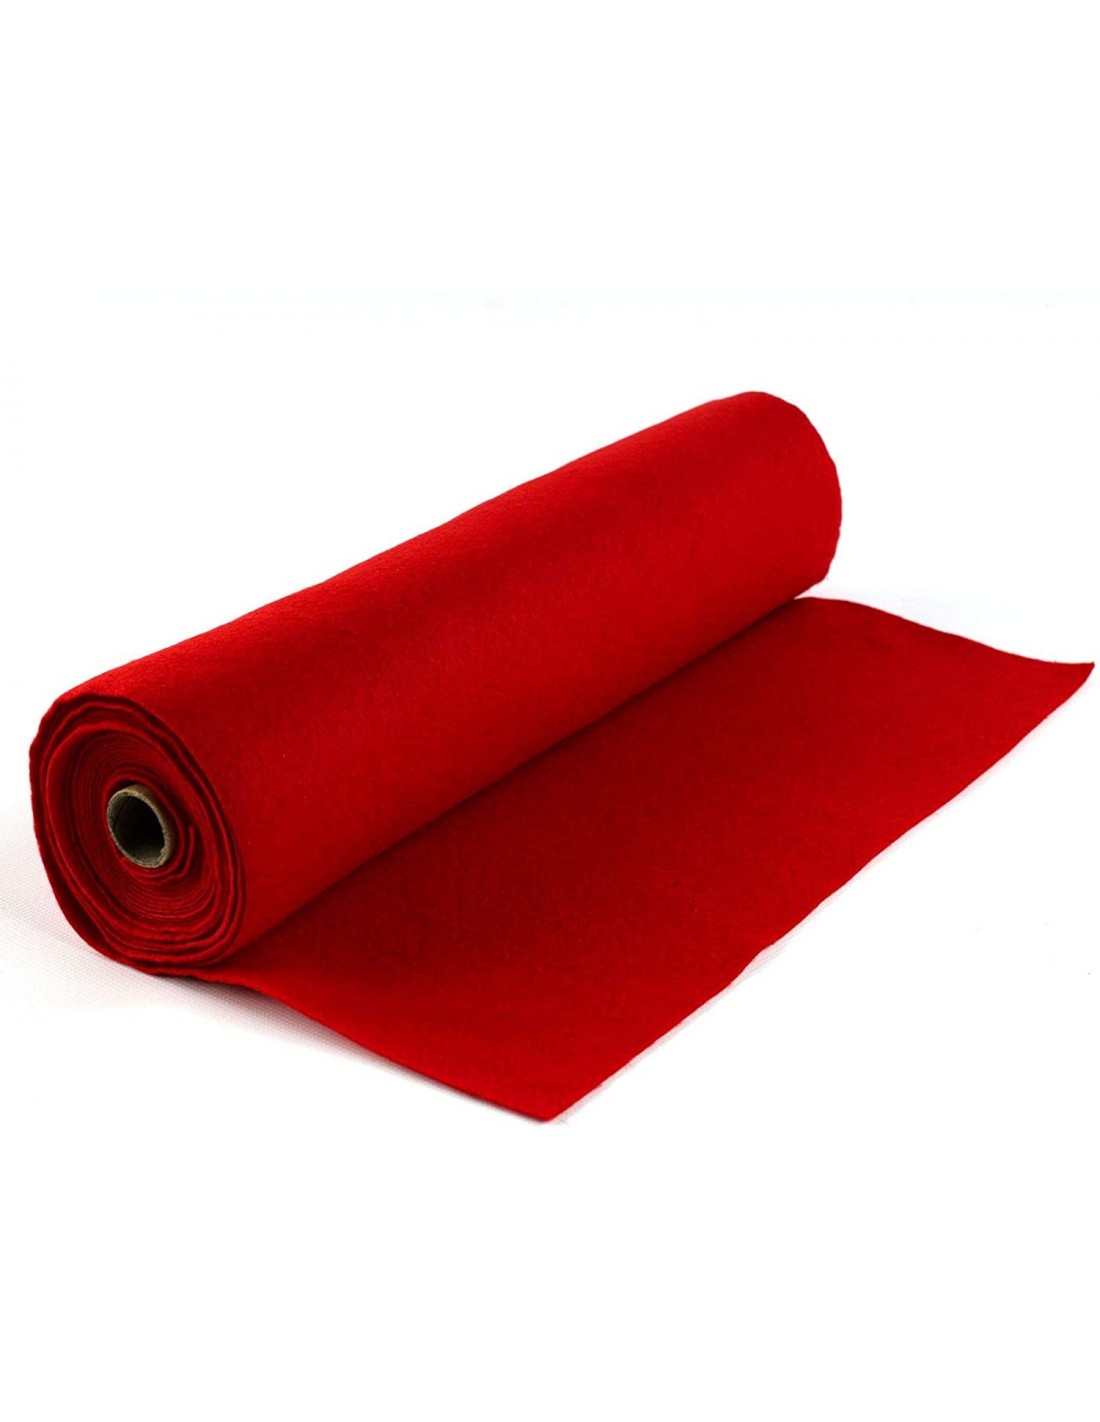 Rollo tela de fieltro Rojo 50X180 cm